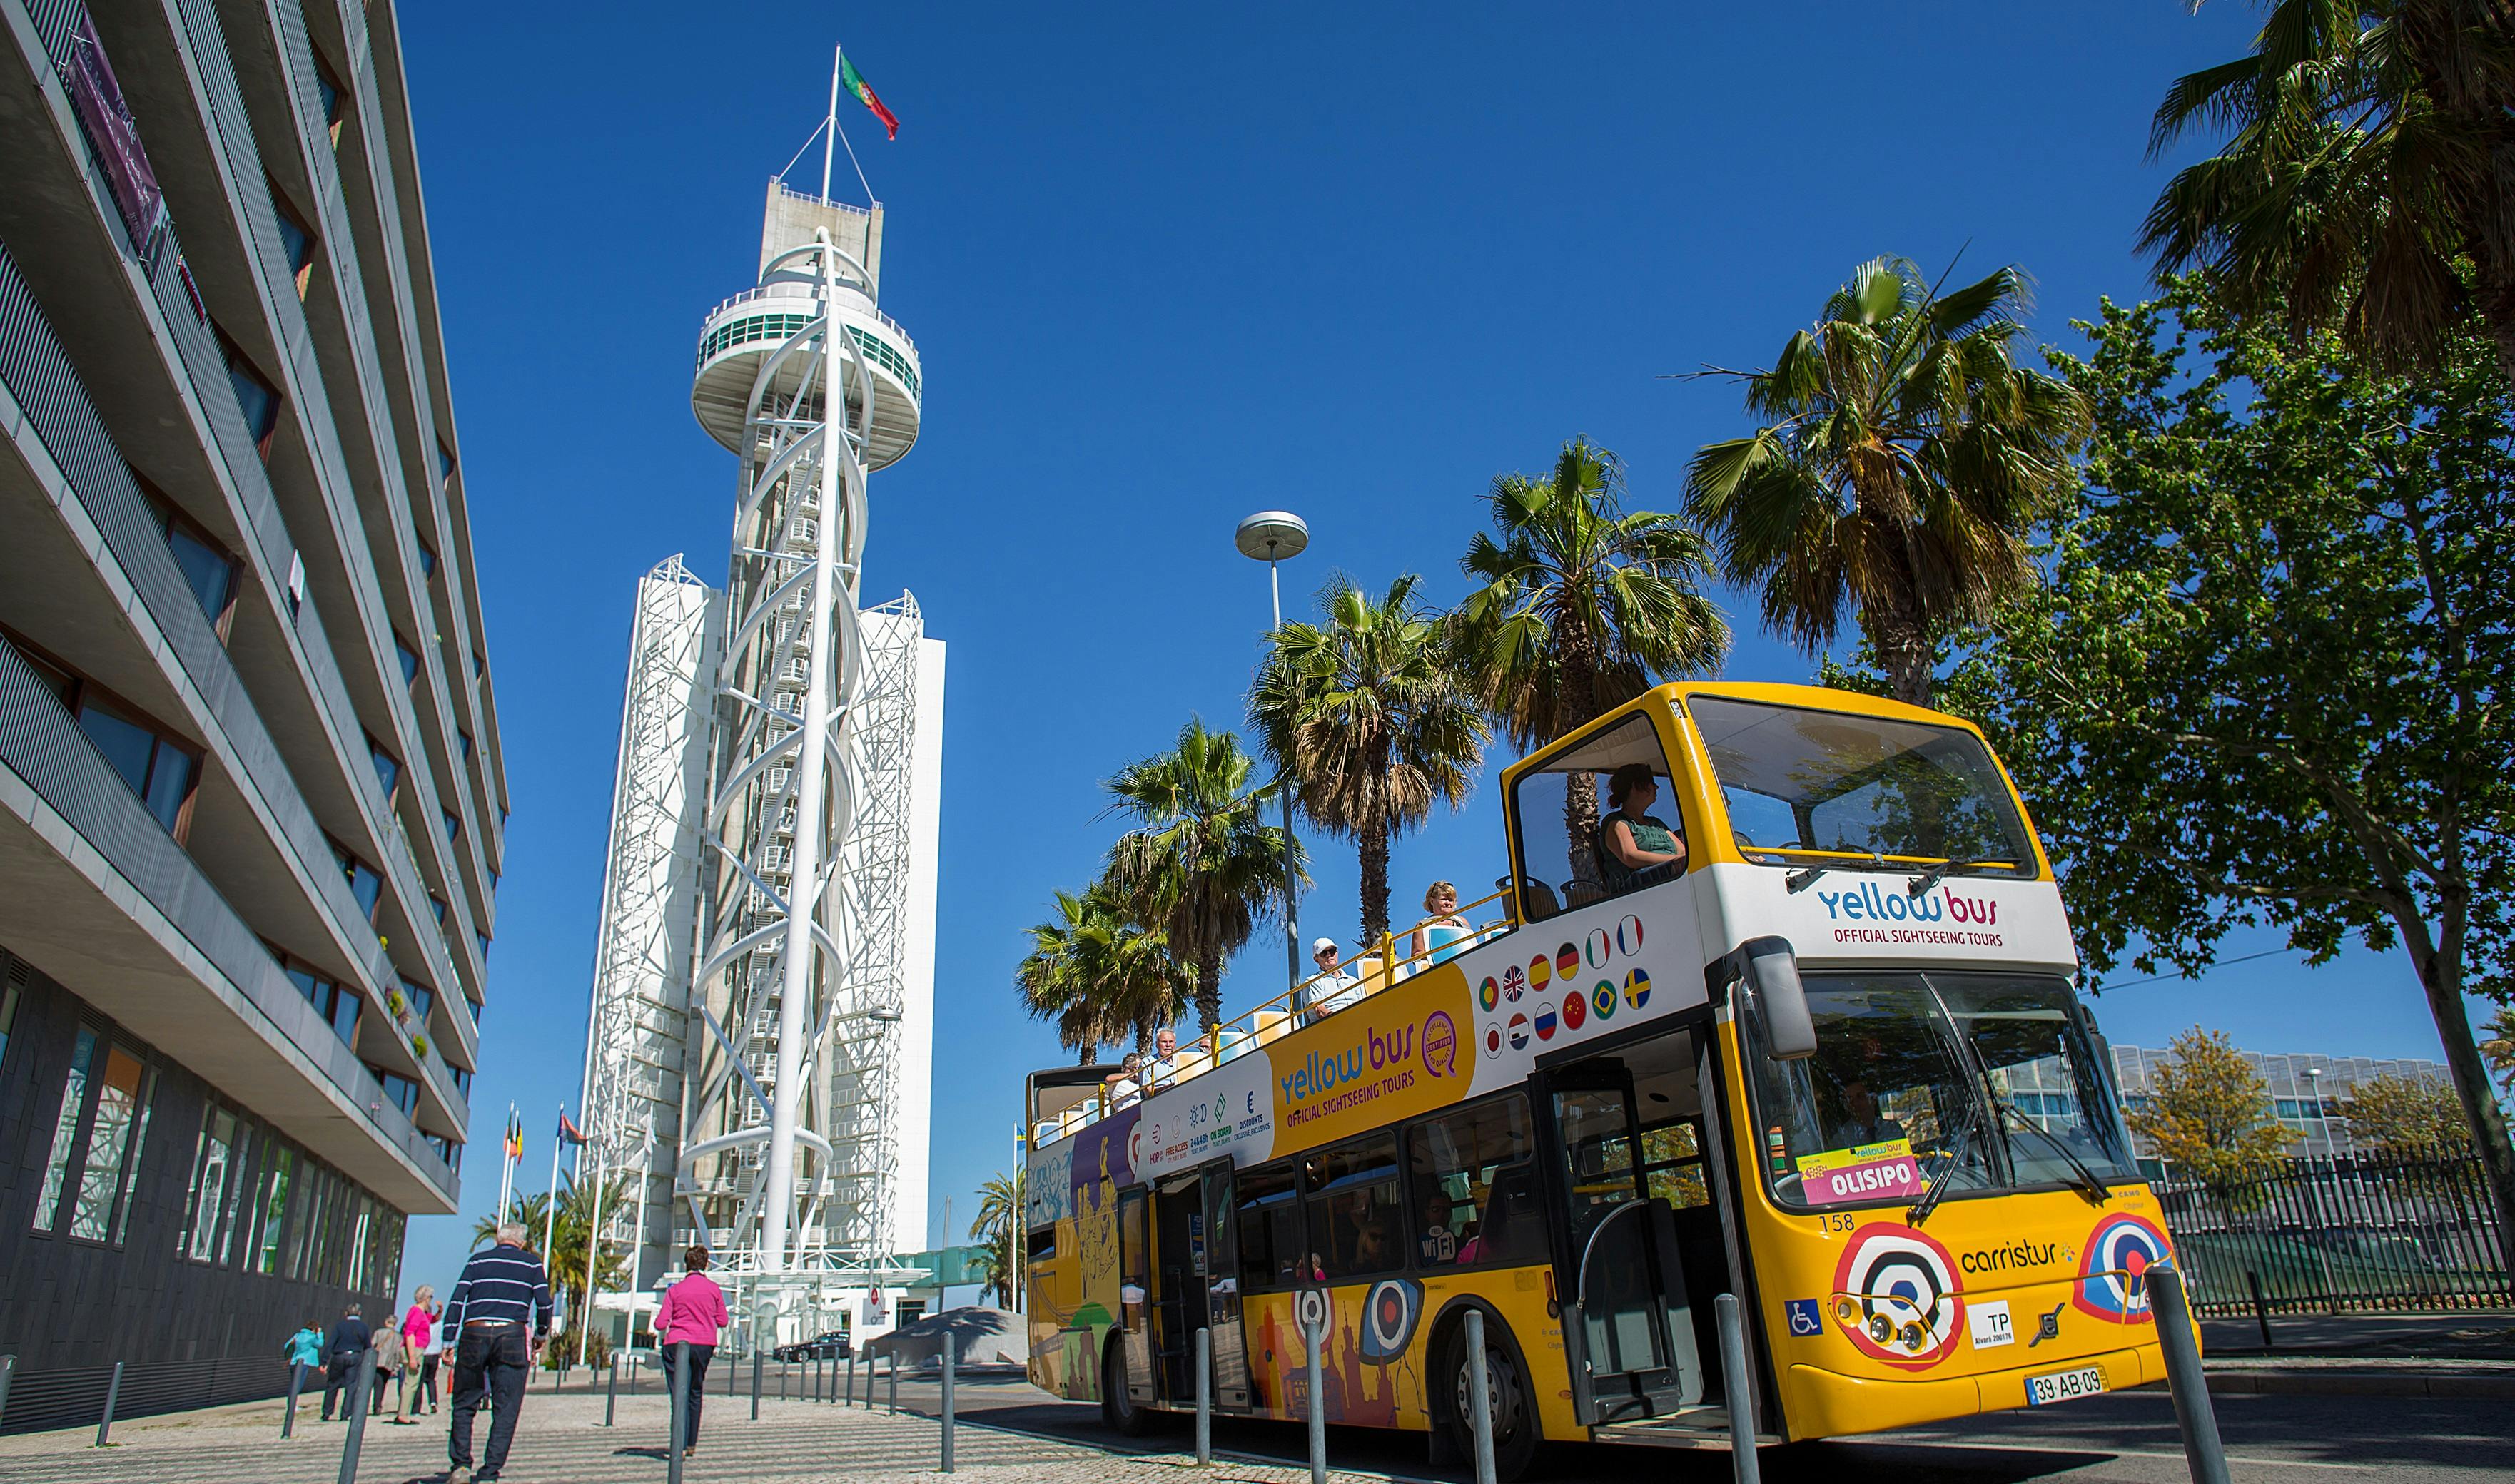 Bilety wstępu do oceanarium i wycieczka autobusowa po nowoczesnej Lizbonie